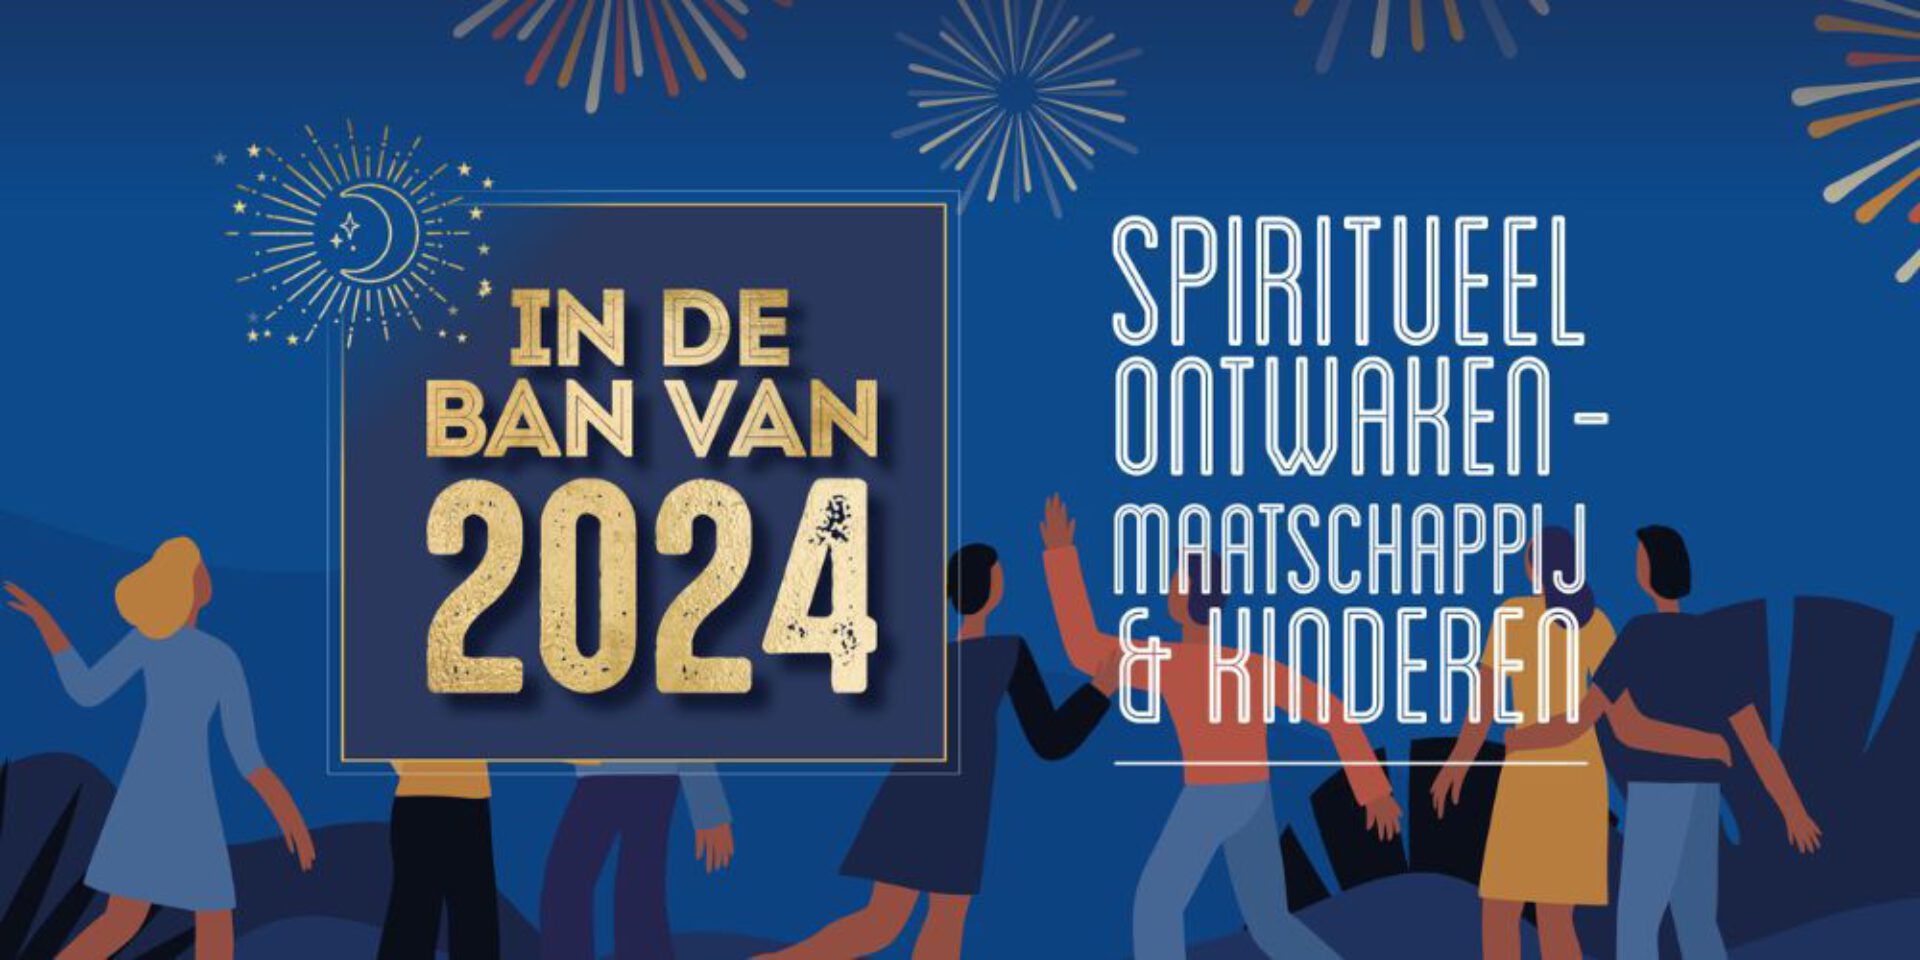 Voorspellingen 2024 • Spiritueel ontwaken, maatschappij en kinderen • In de ban van 2024